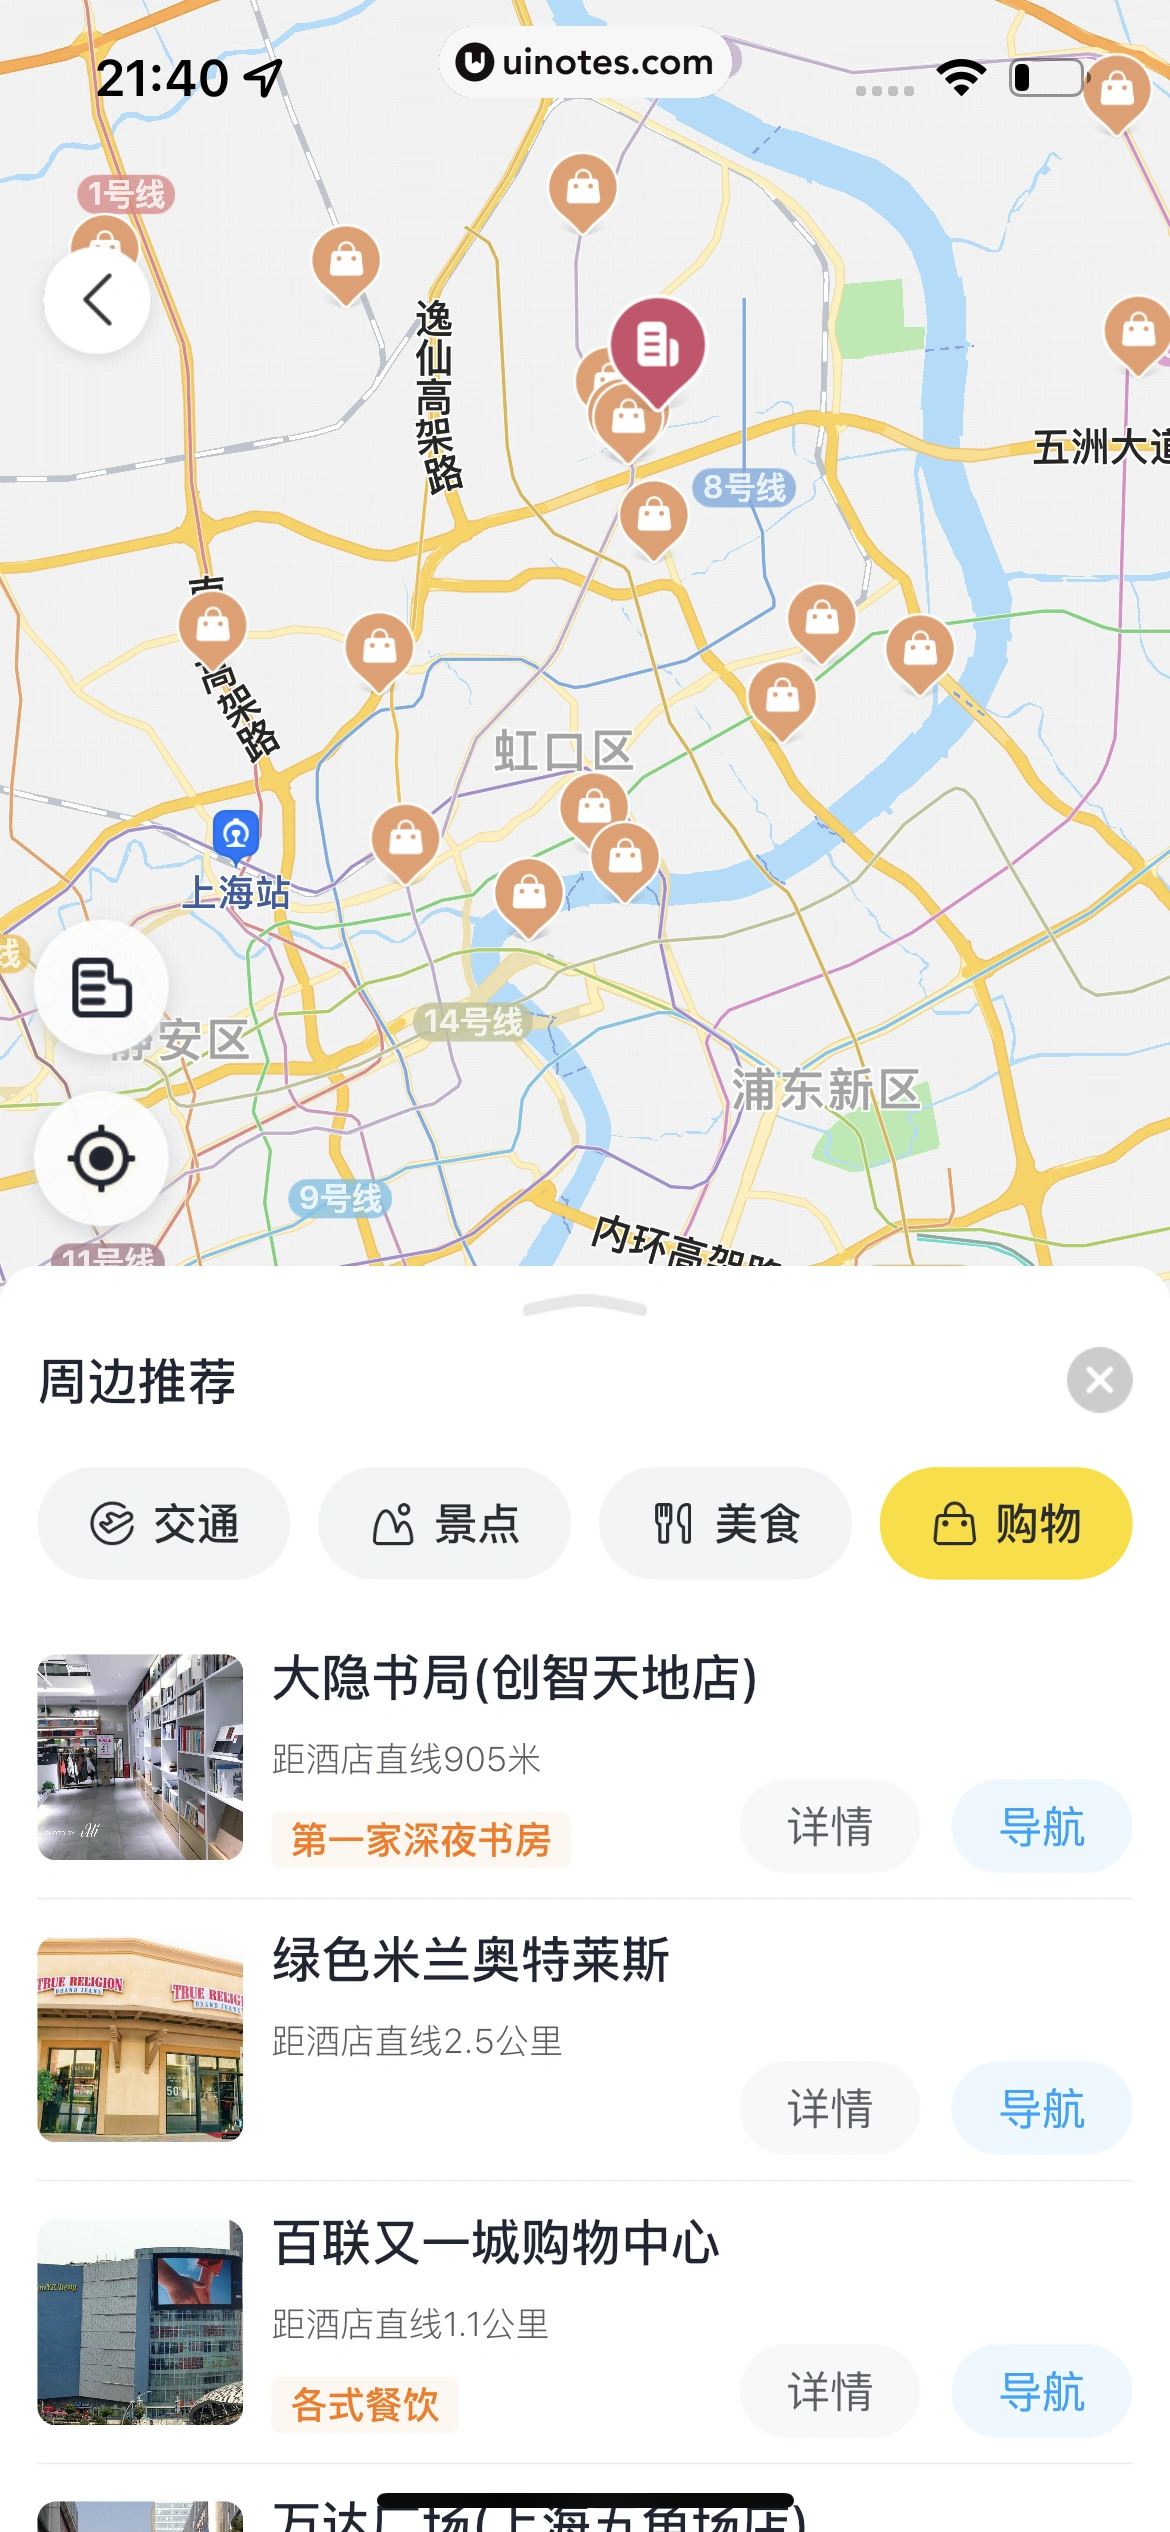 飞猪旅行 App 截图 207 - UI Notes